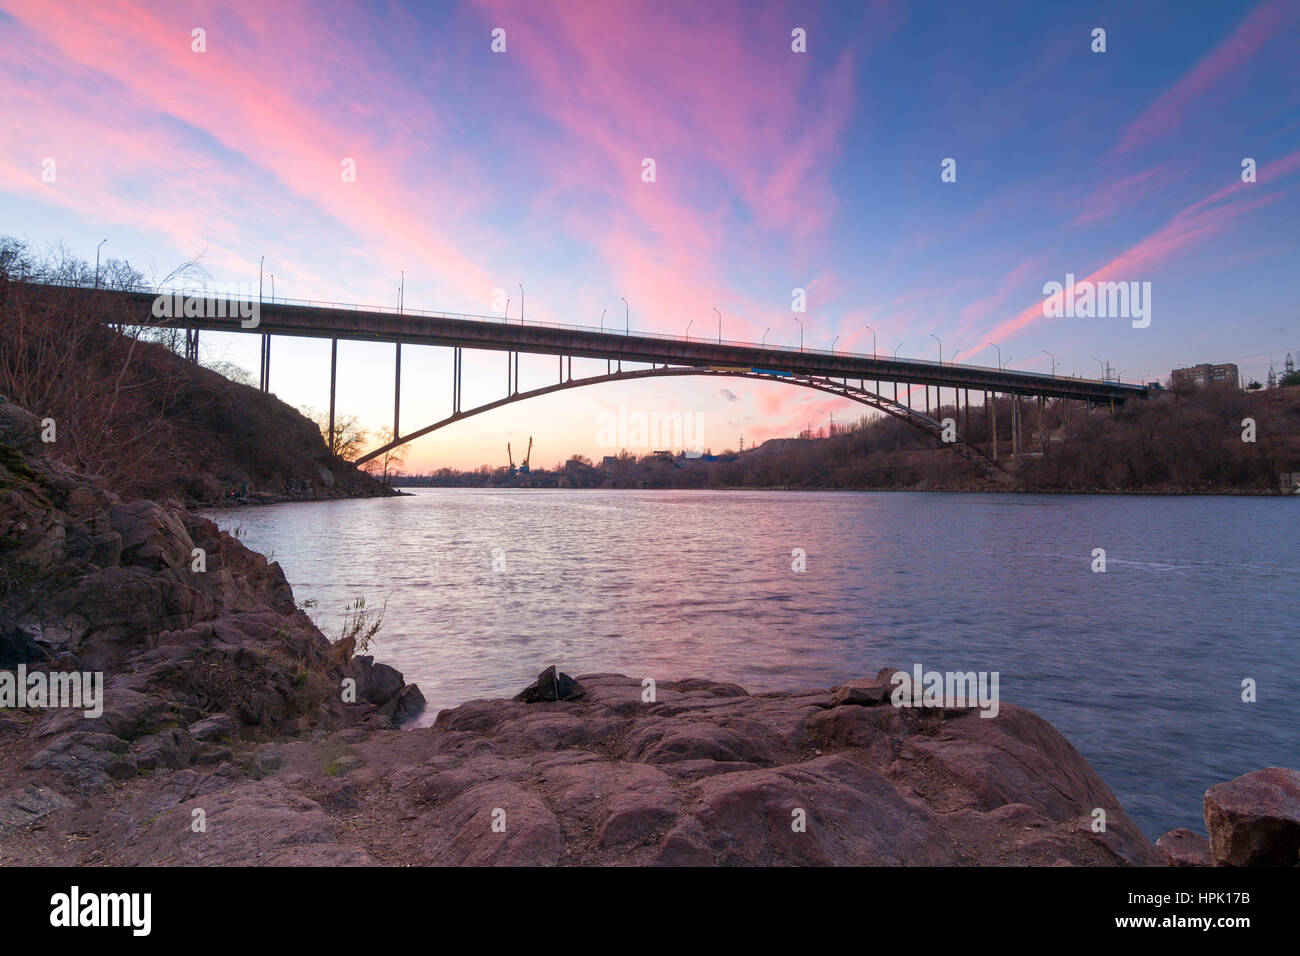 Acciaio ponte ad arco sul vecchio Dnieper con luminosi nuvole nel cielo della sera riflettendo in acqua e antiche rocce di granito Khortytsia island, Zaporozhye, Ukr Foto Stock